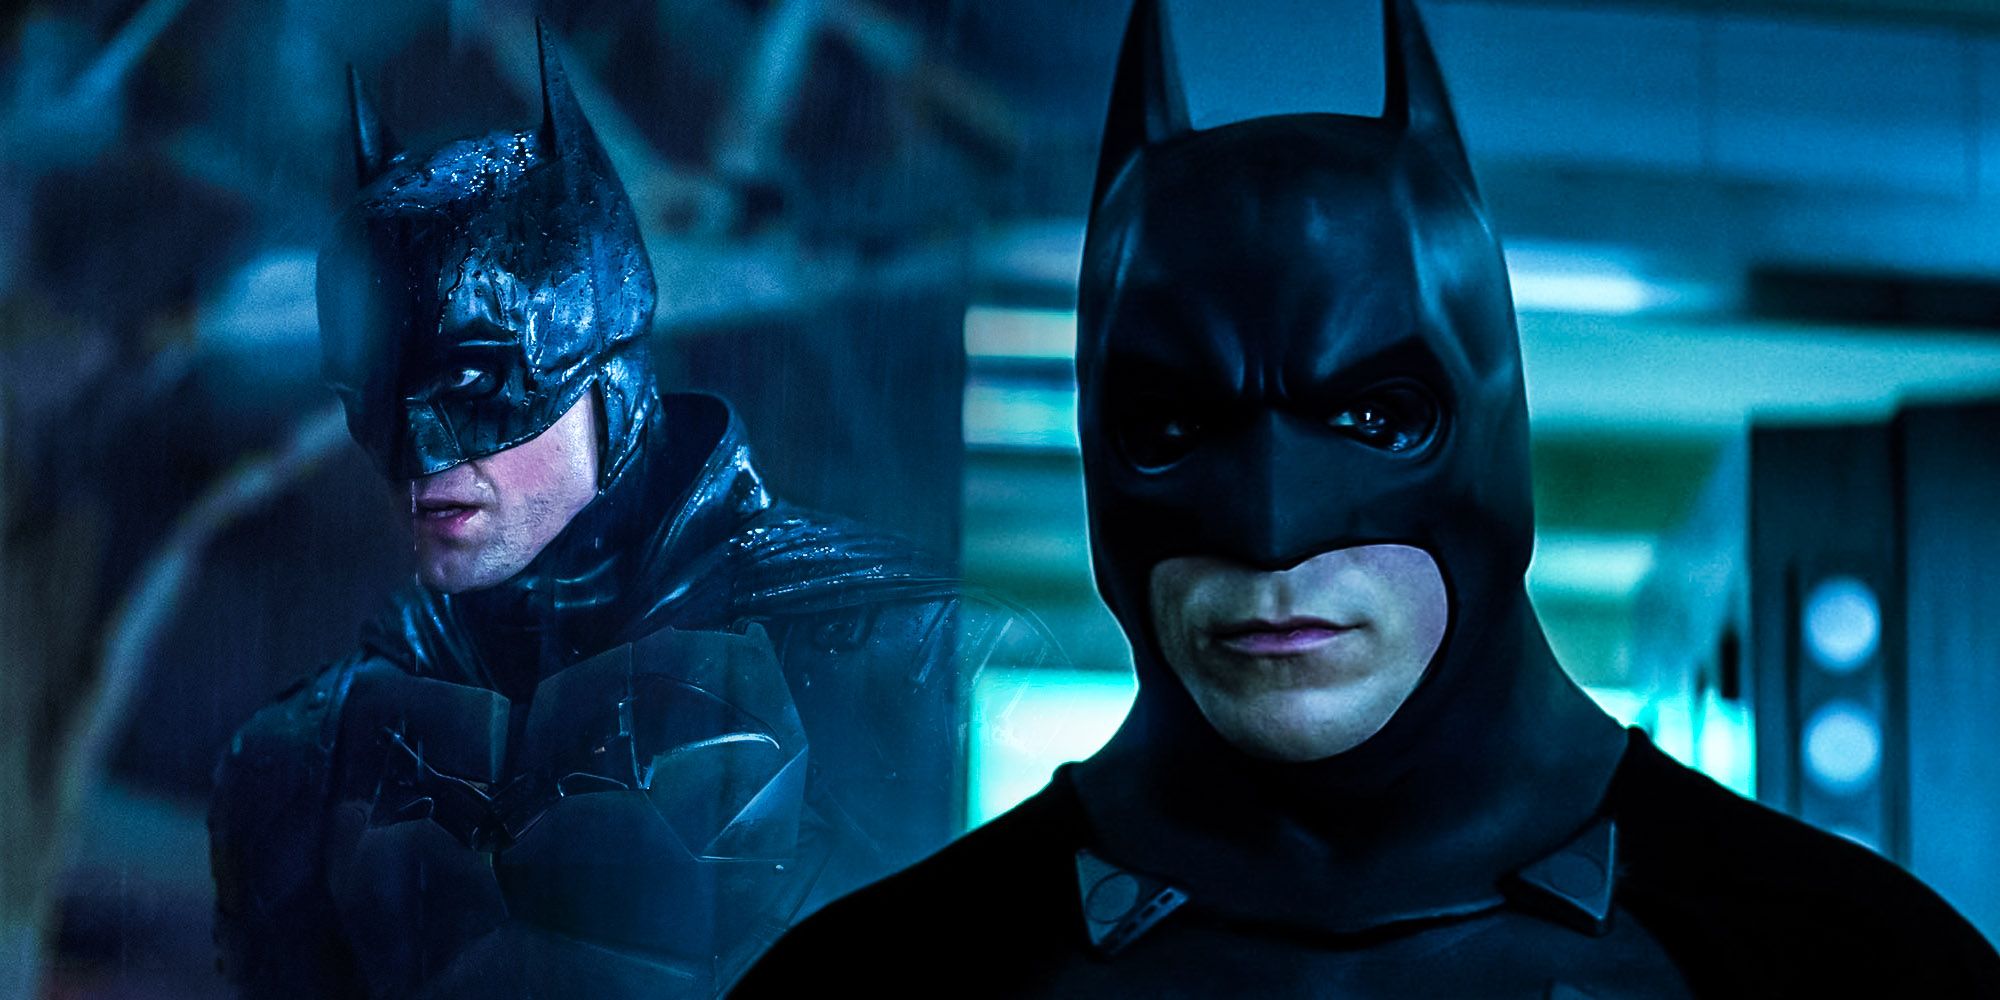 Robert Pattinson vs Christian Bale: ¿Qué Batman tenía un equipo más realista?